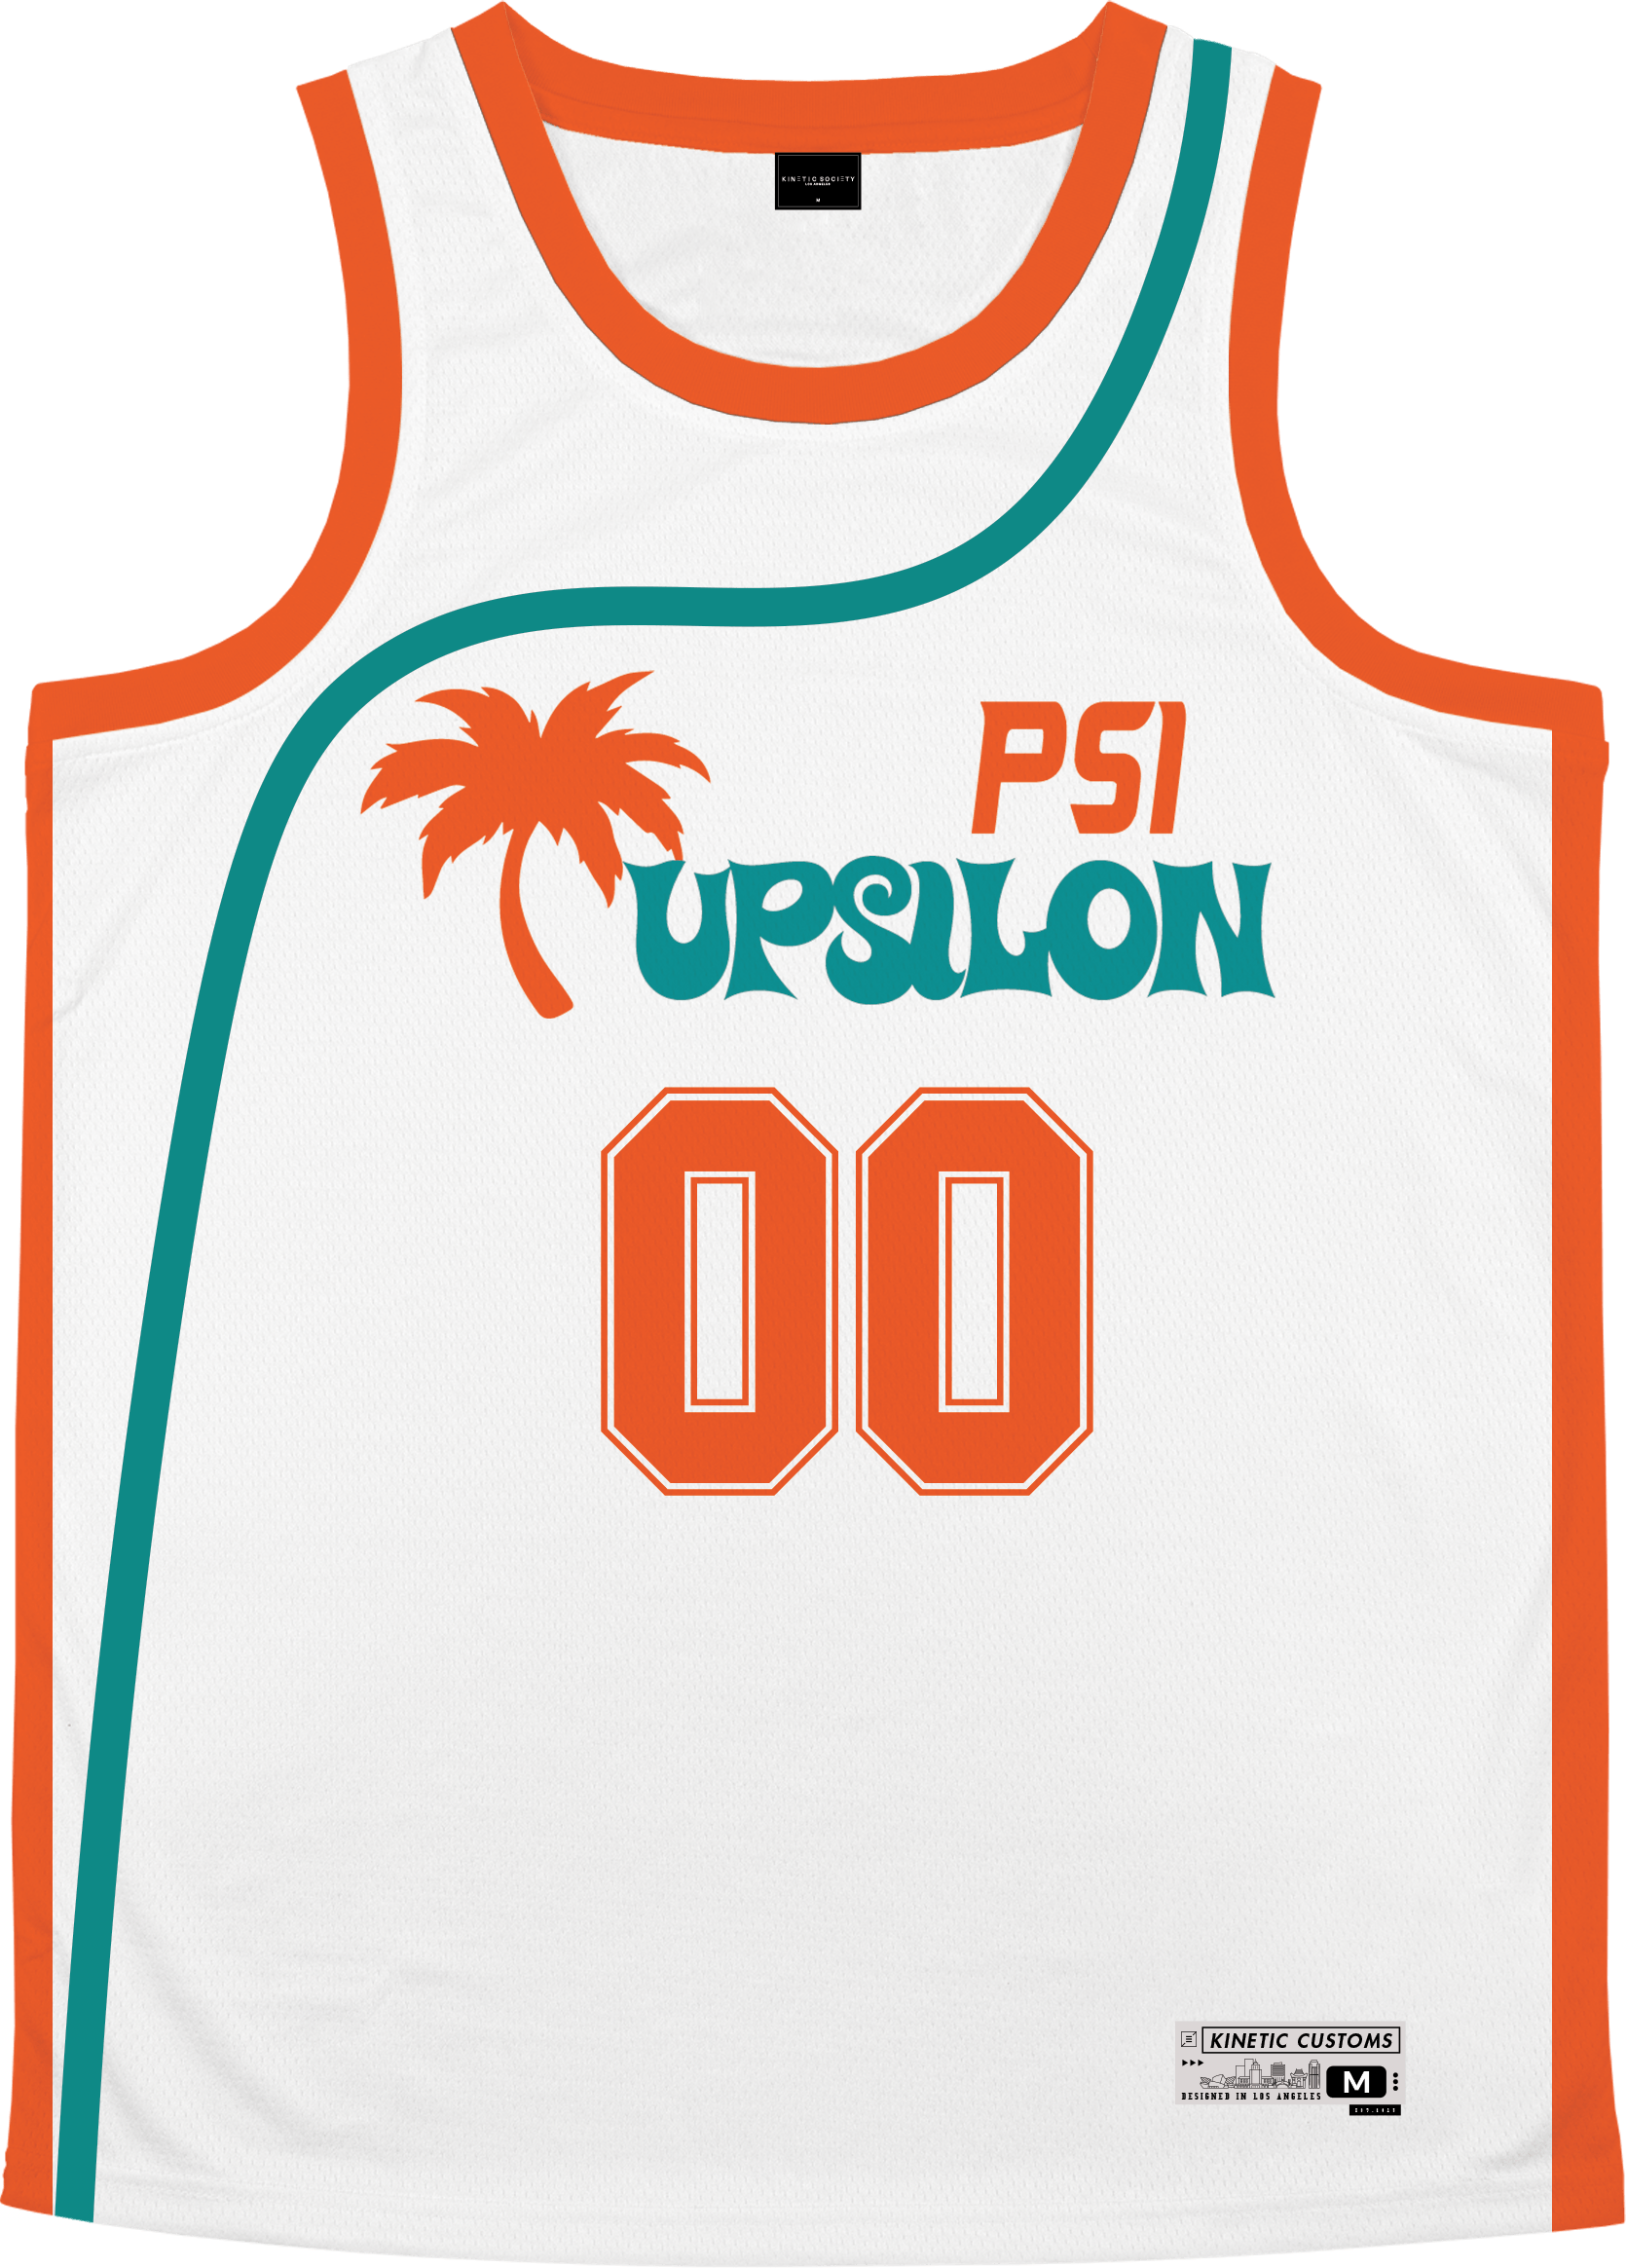 Psi Upsilon - Tropical Basketball Jersey Premium Basketball Kinetic Society LLC 